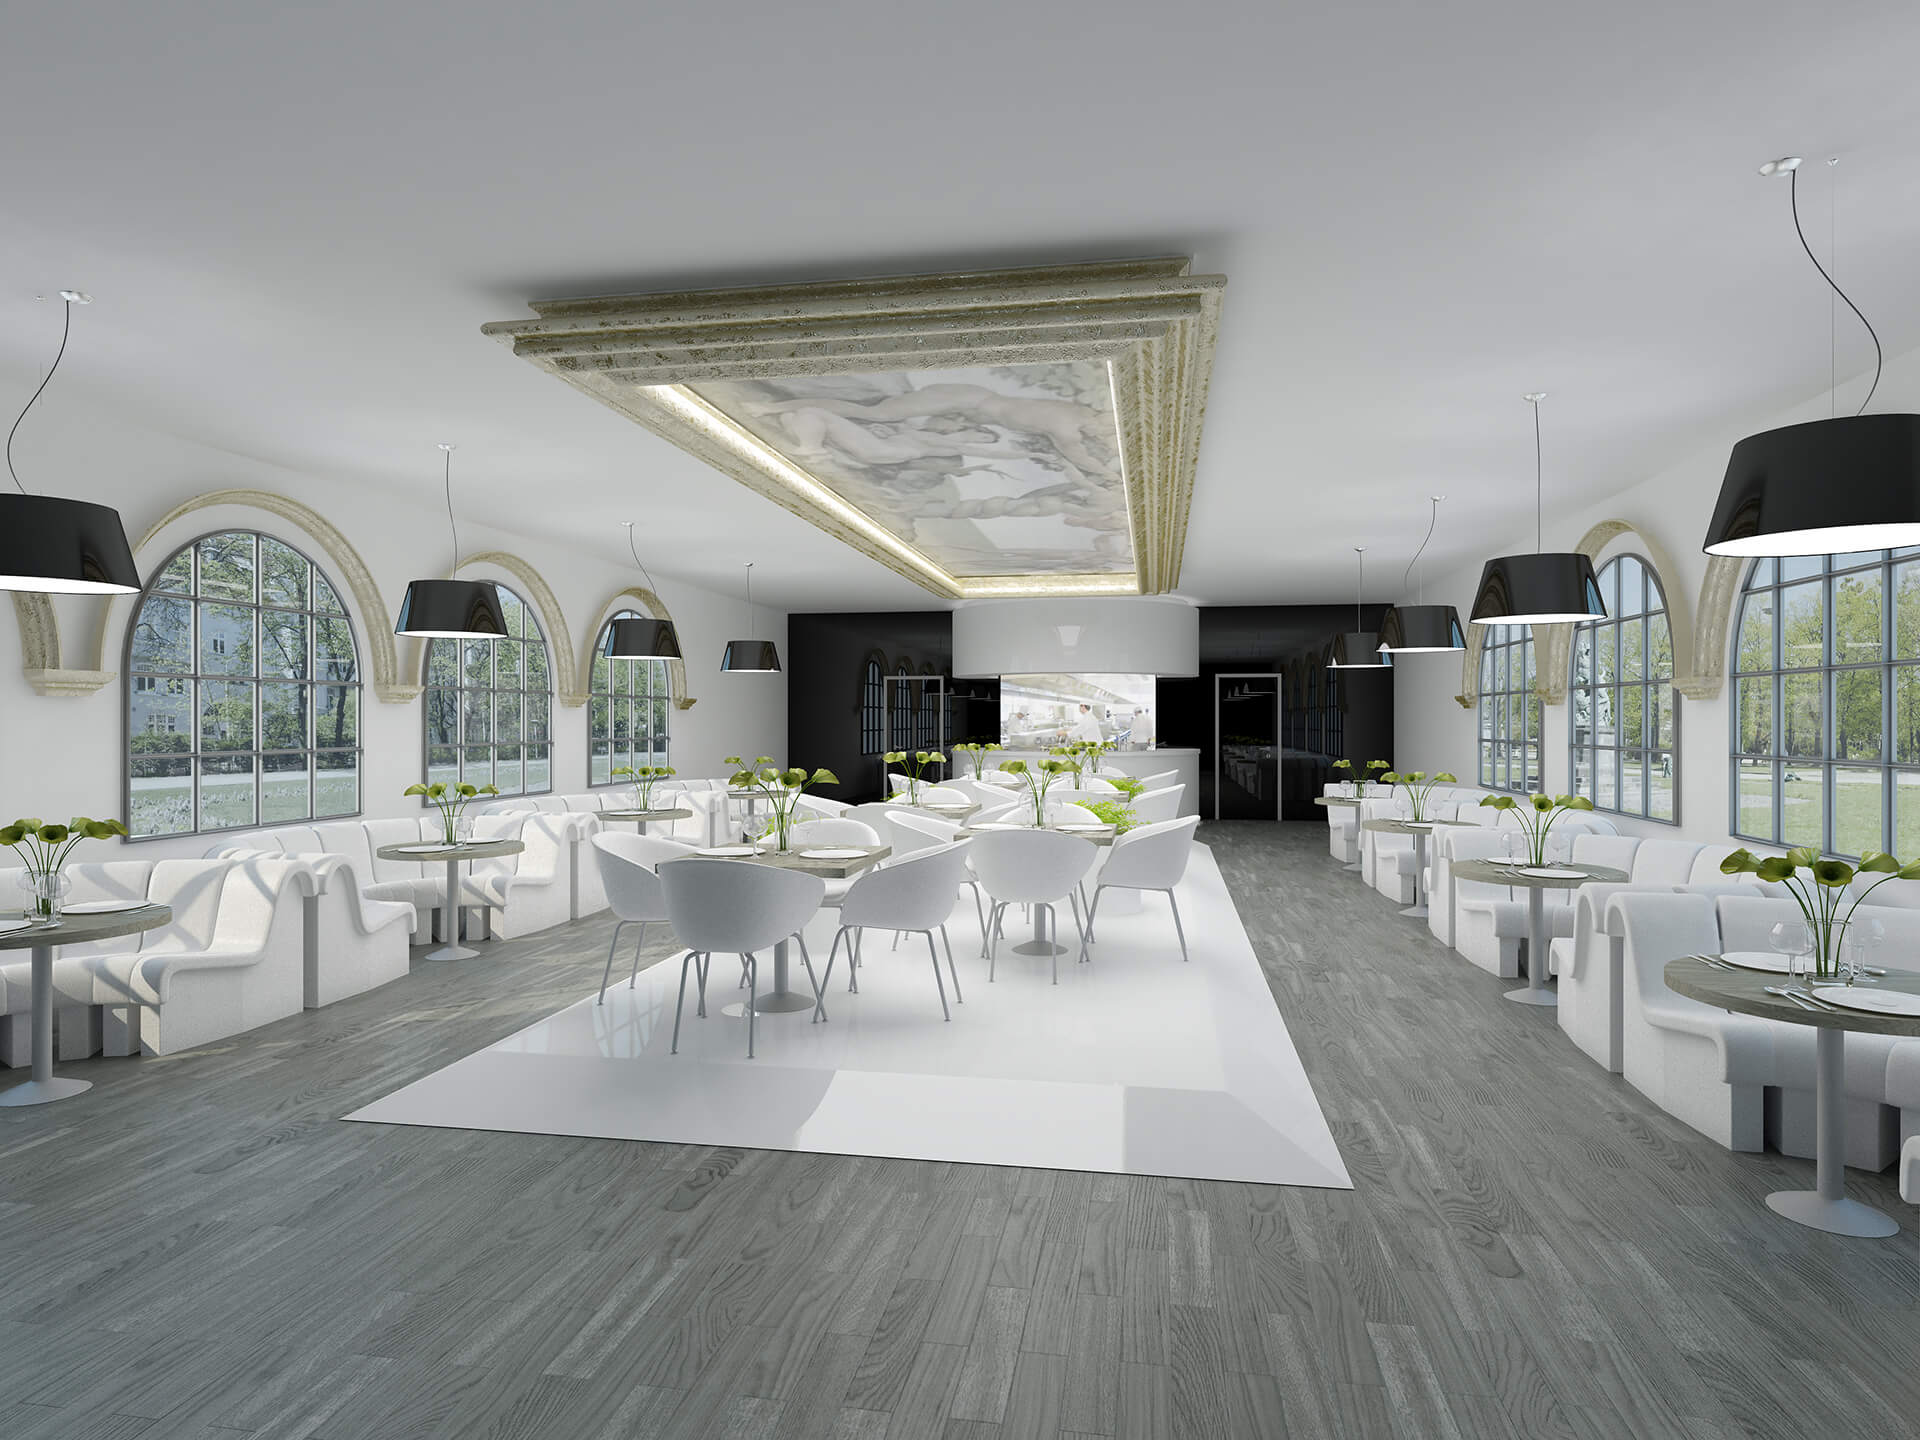 Restauracja Premium w Berlinie - Projekty Neostudio Architekci